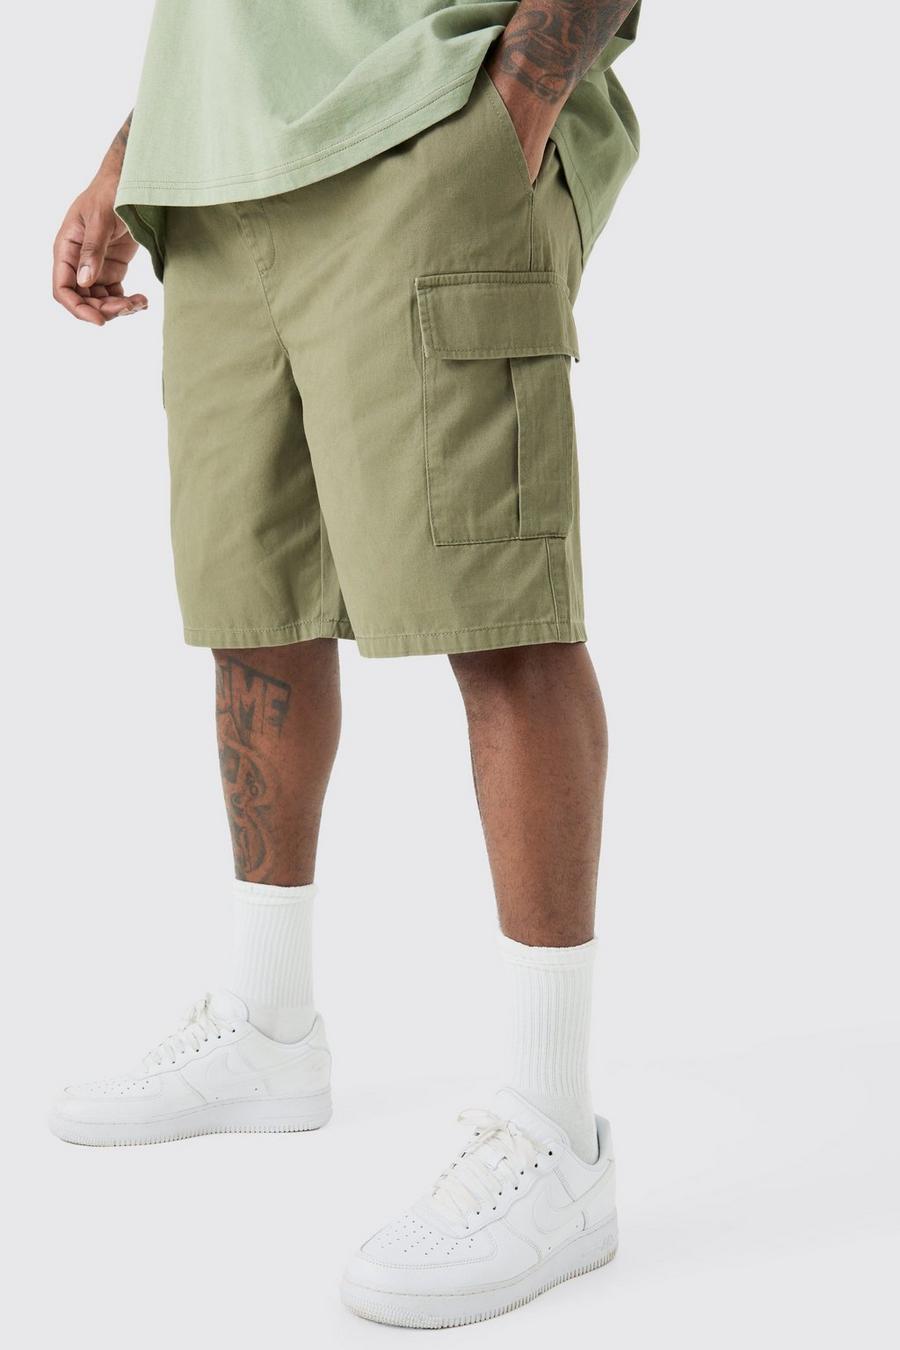 Pantalones cortos Plus cargo holgados con cintura elástica en color caqui, Khaki